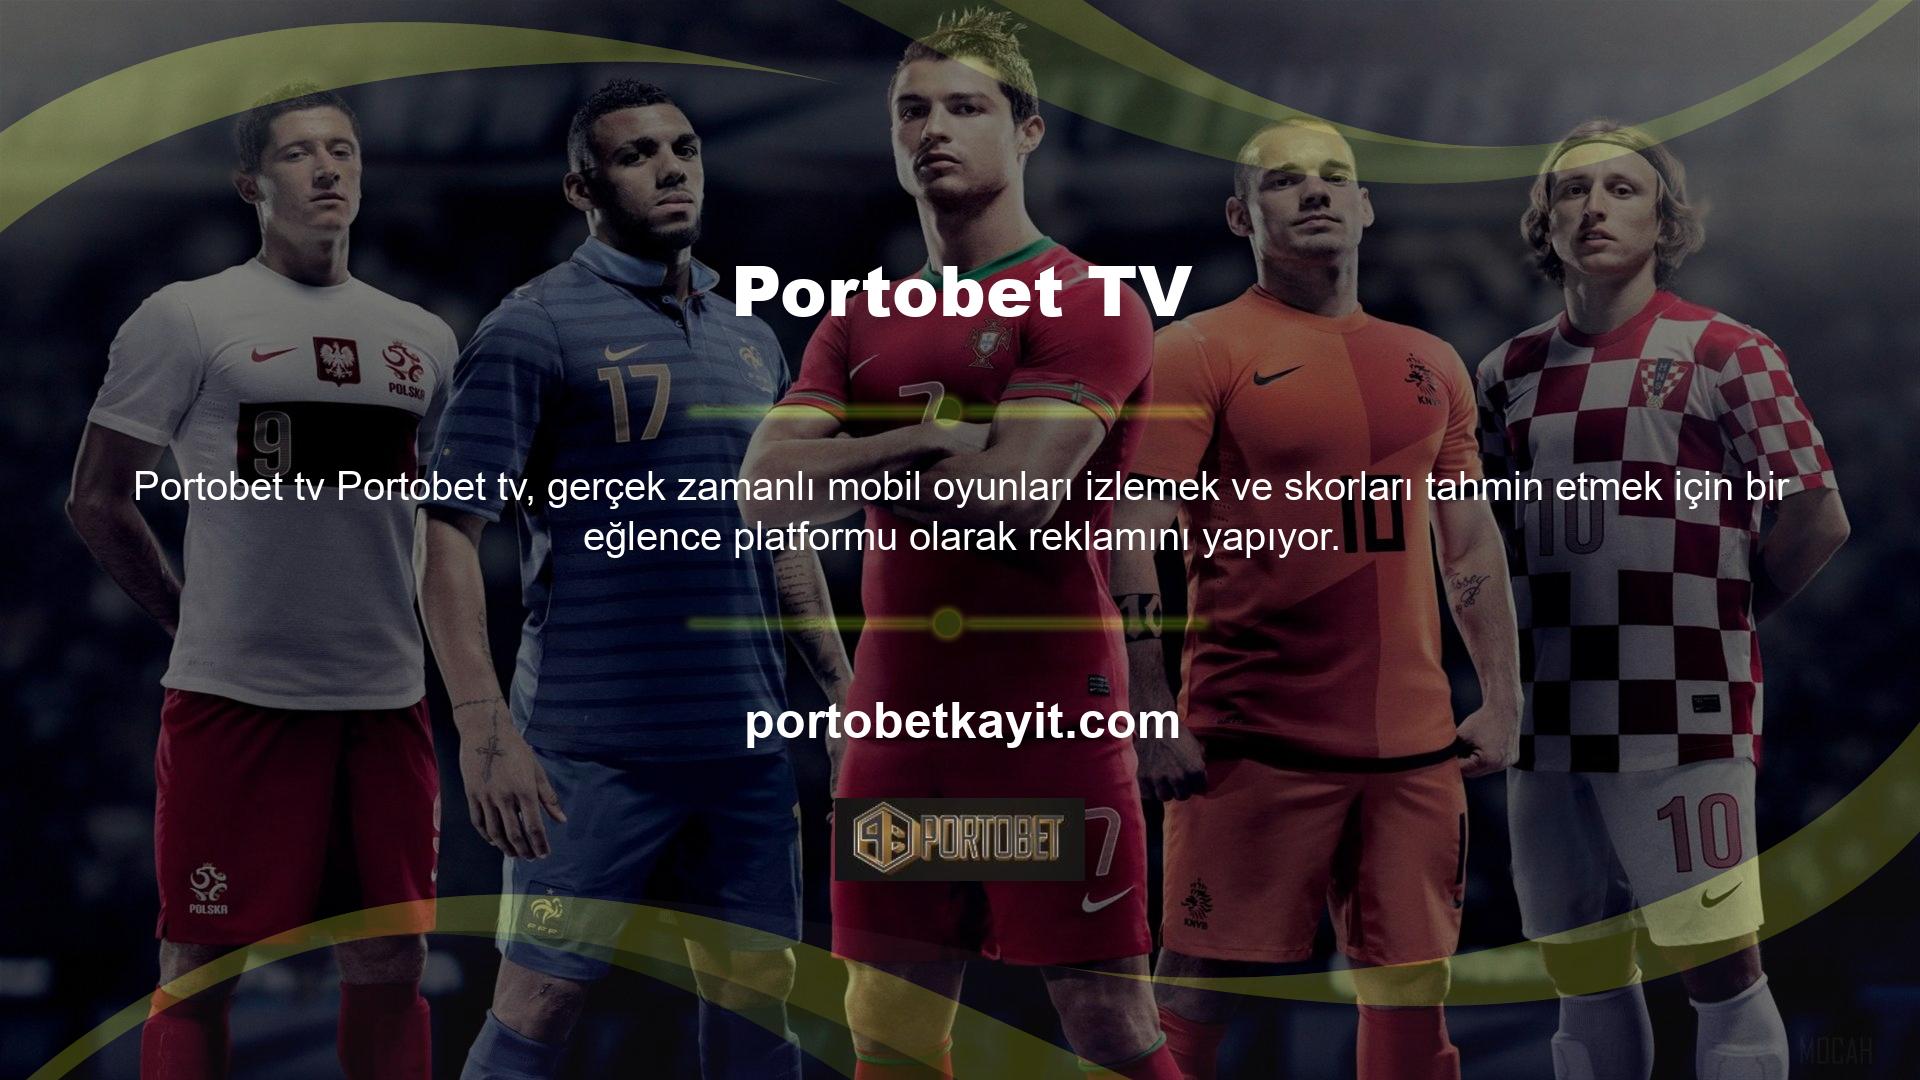 TV bahis sitesi Portobet, cep telefonunuzdan çeşitli sporları canlı olarak izlemenizi sağlar